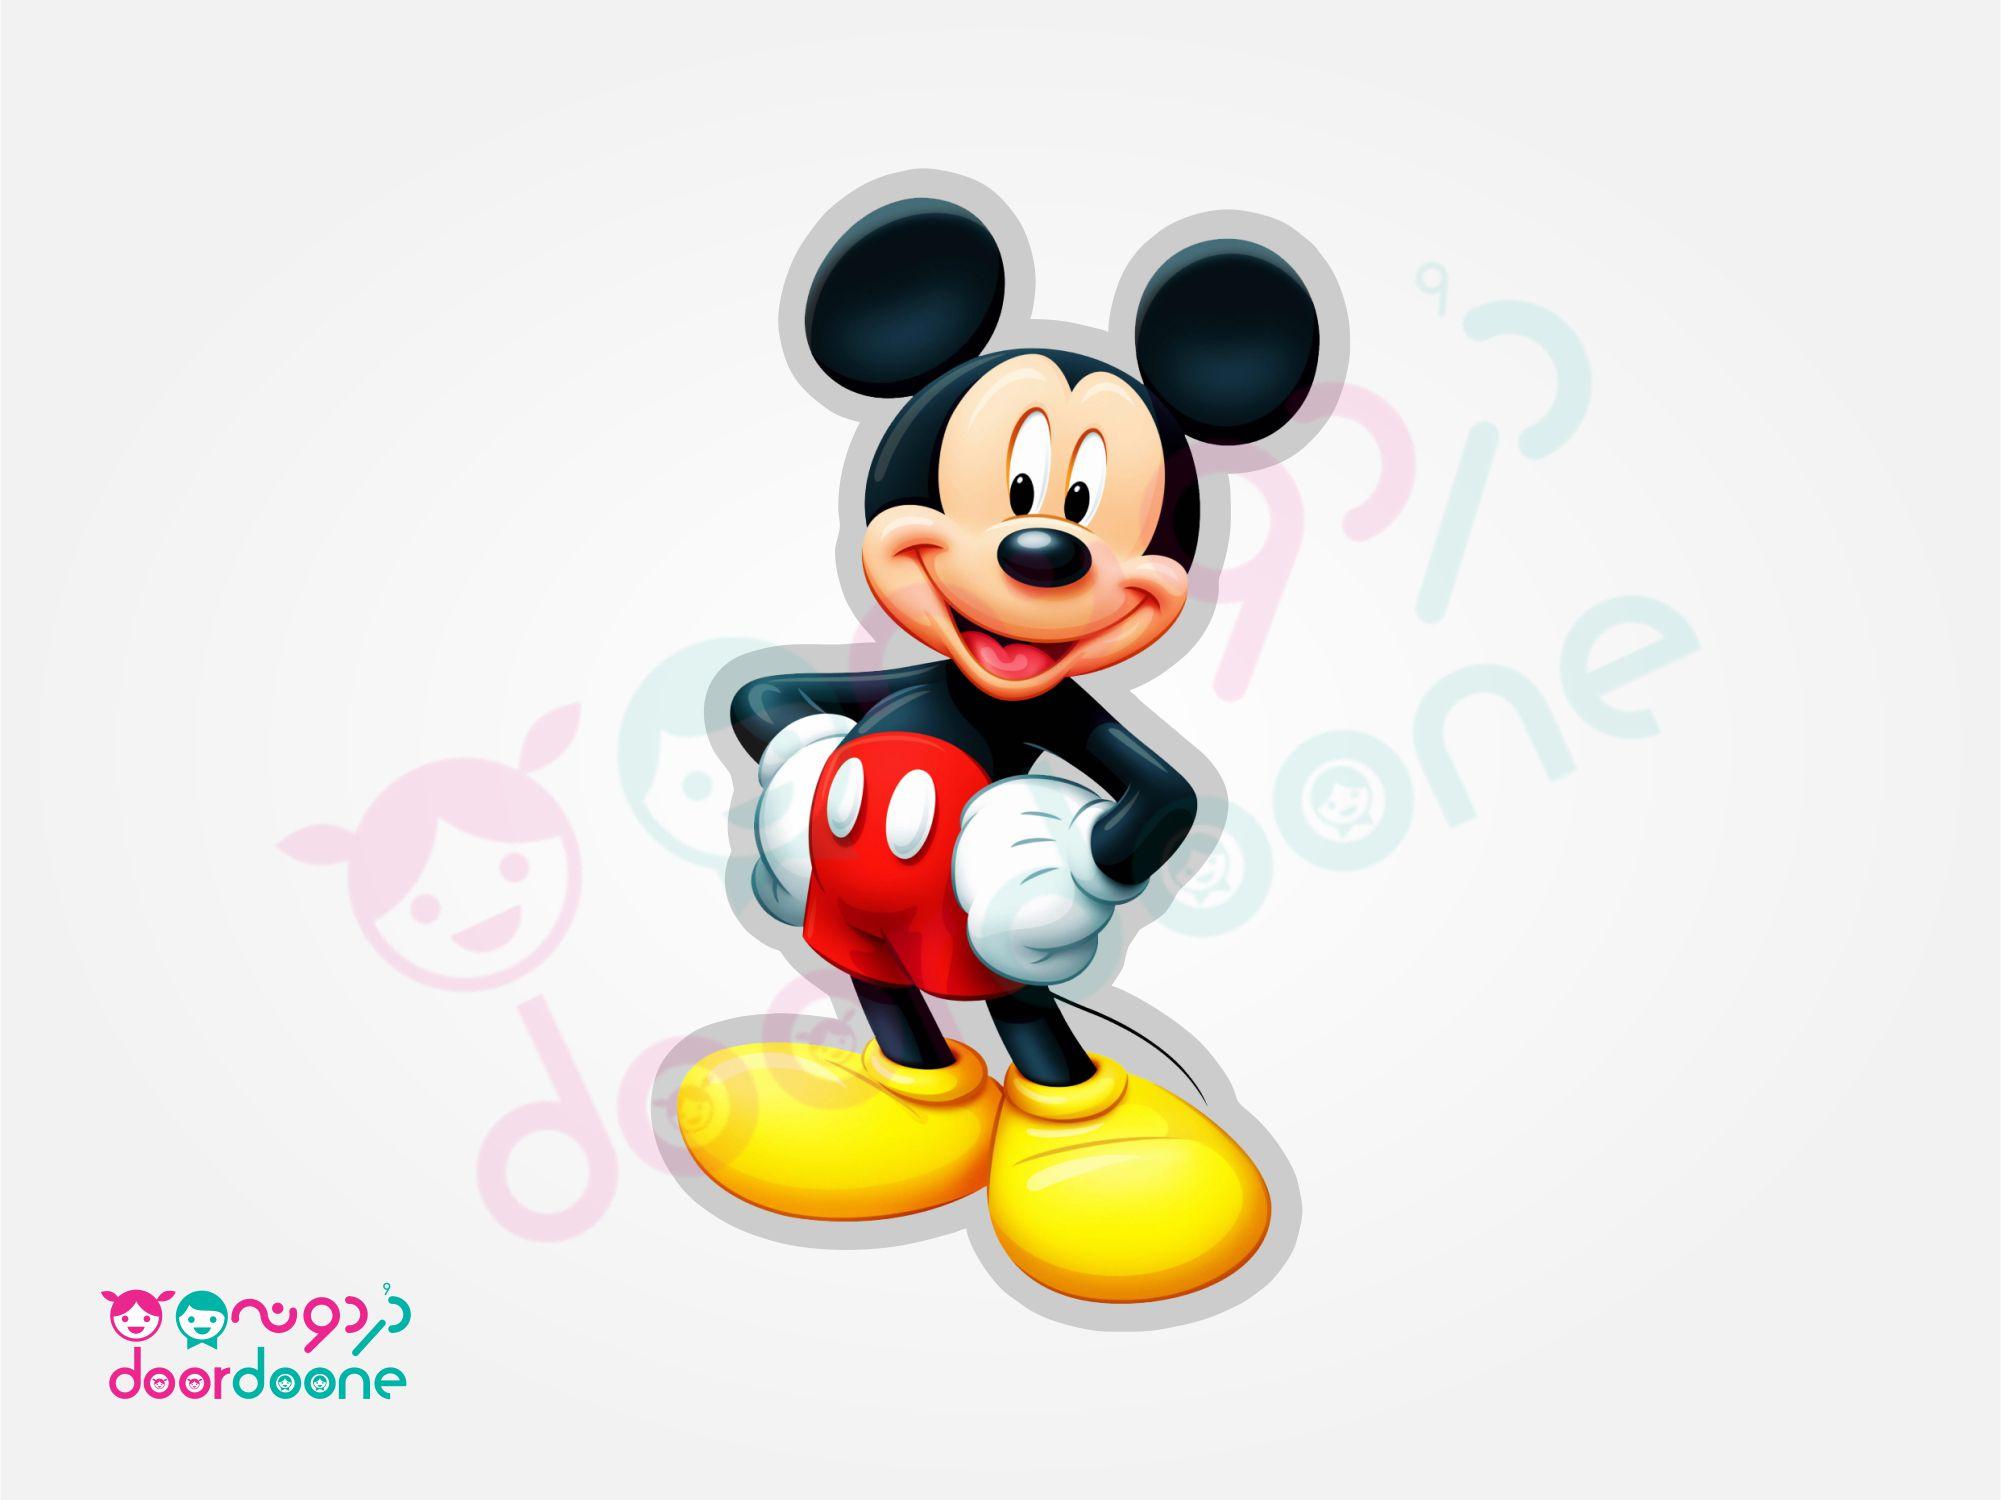 استند ميکی ماوس (Mikey Mouse) - ارتفاع 70 سانتيمتر